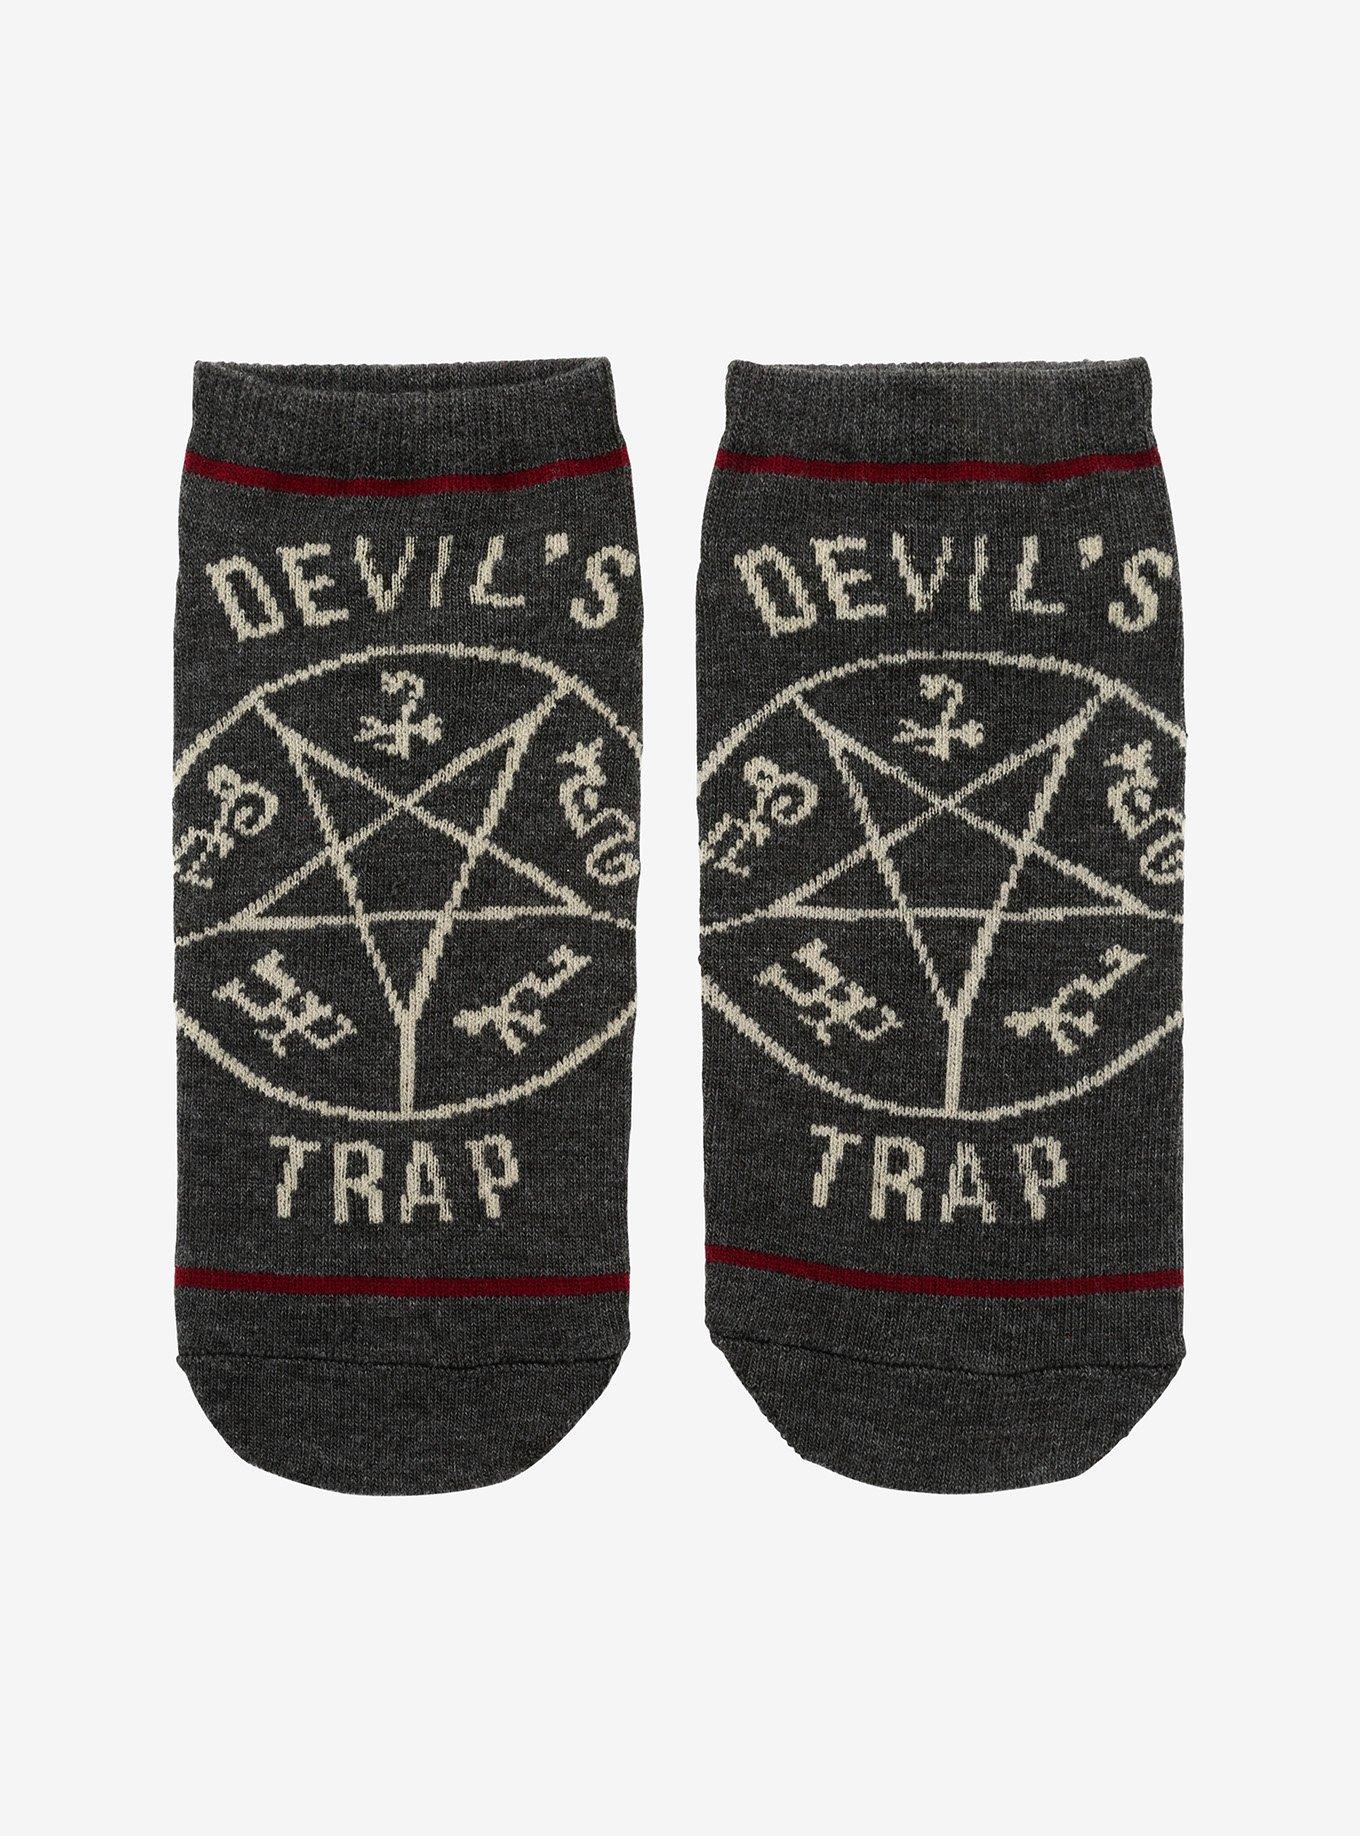 Supernatural Devil's Trap No-Show Socks, , hi-res